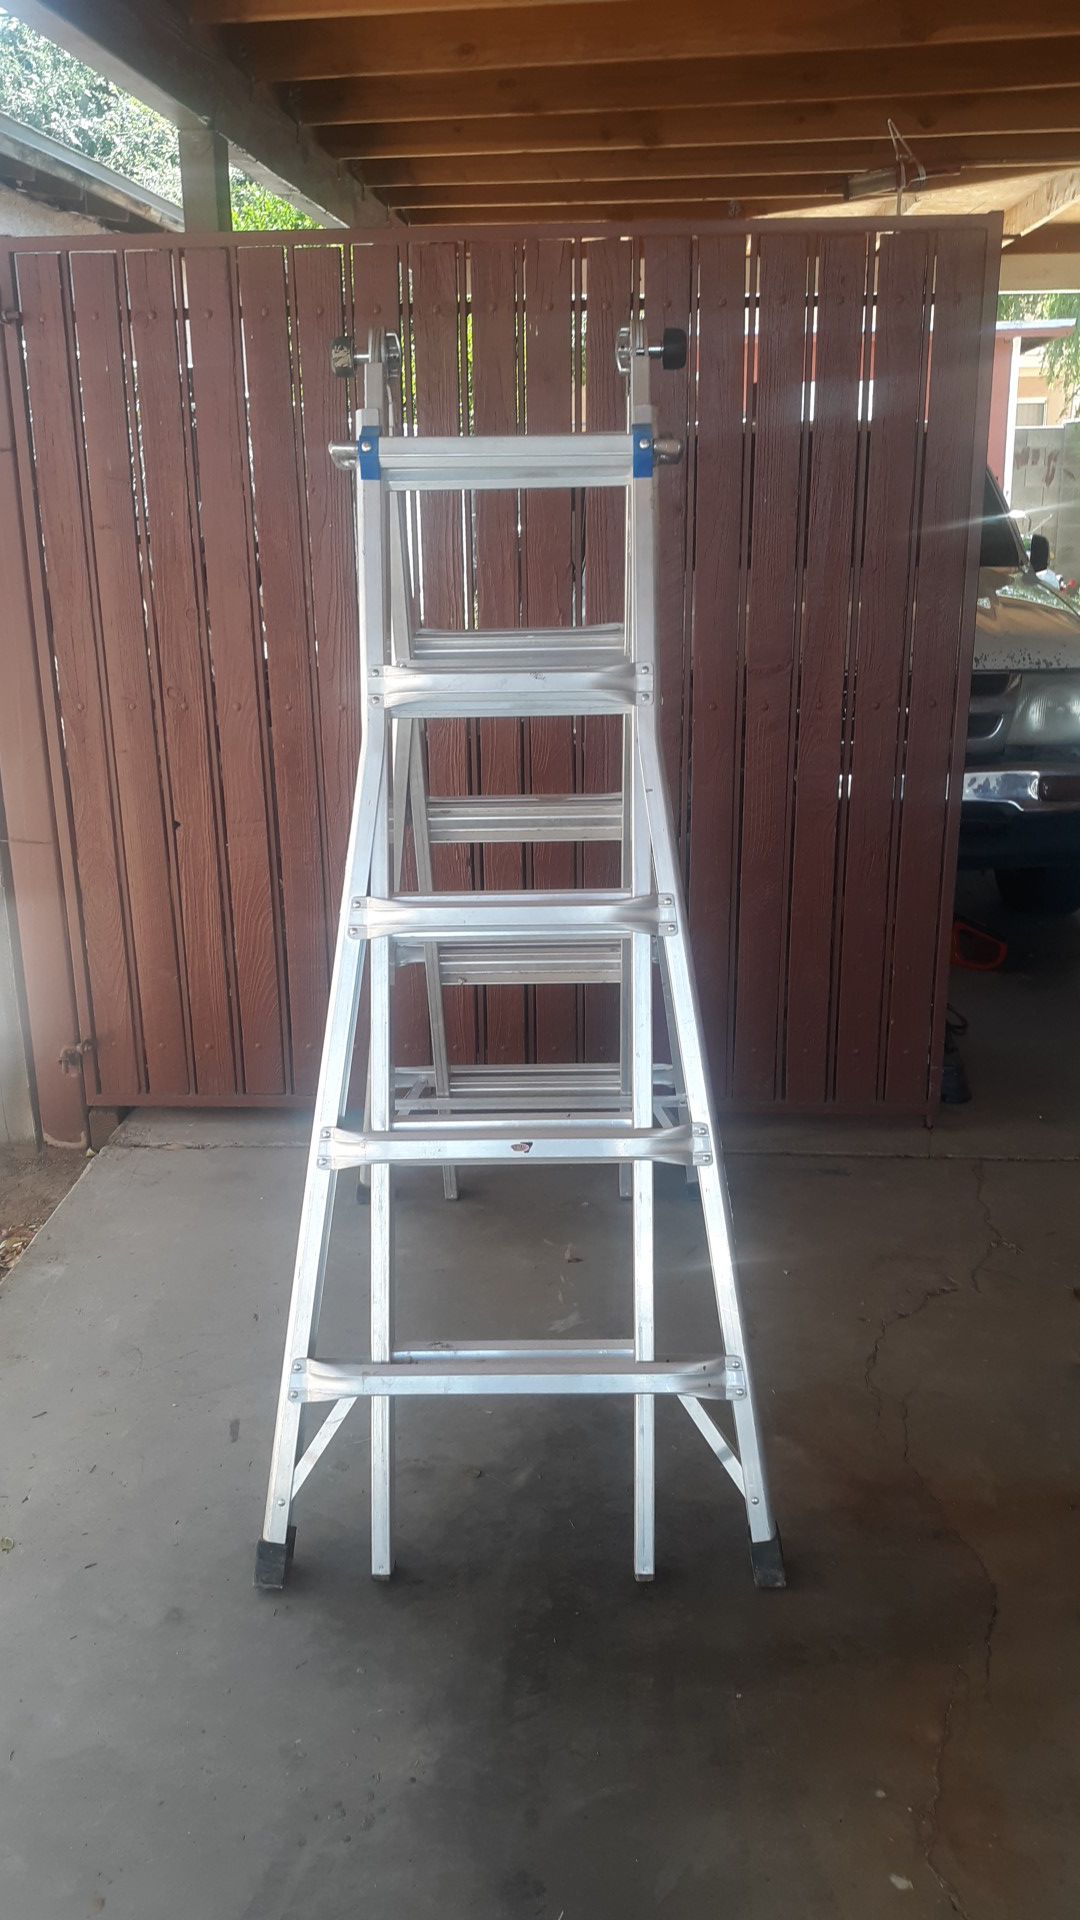 Gorilla ladder